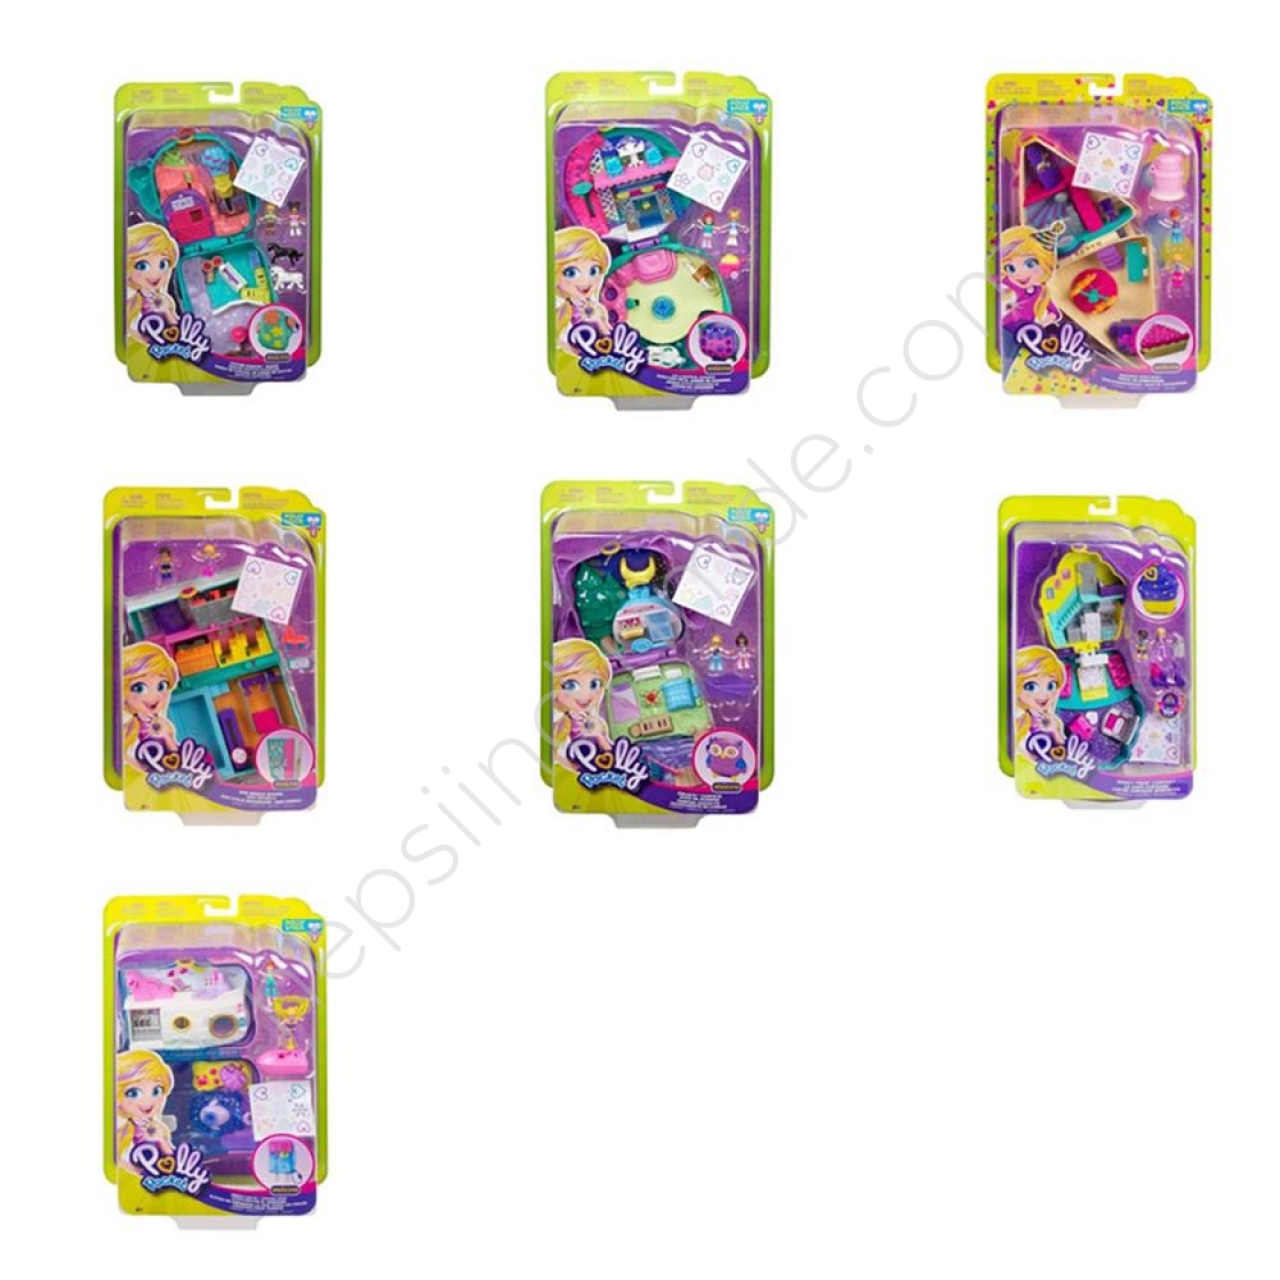 Mattel  FRY35 Polly Pocket Micro Oyun Seti 1 Adet Fiyatıdır.